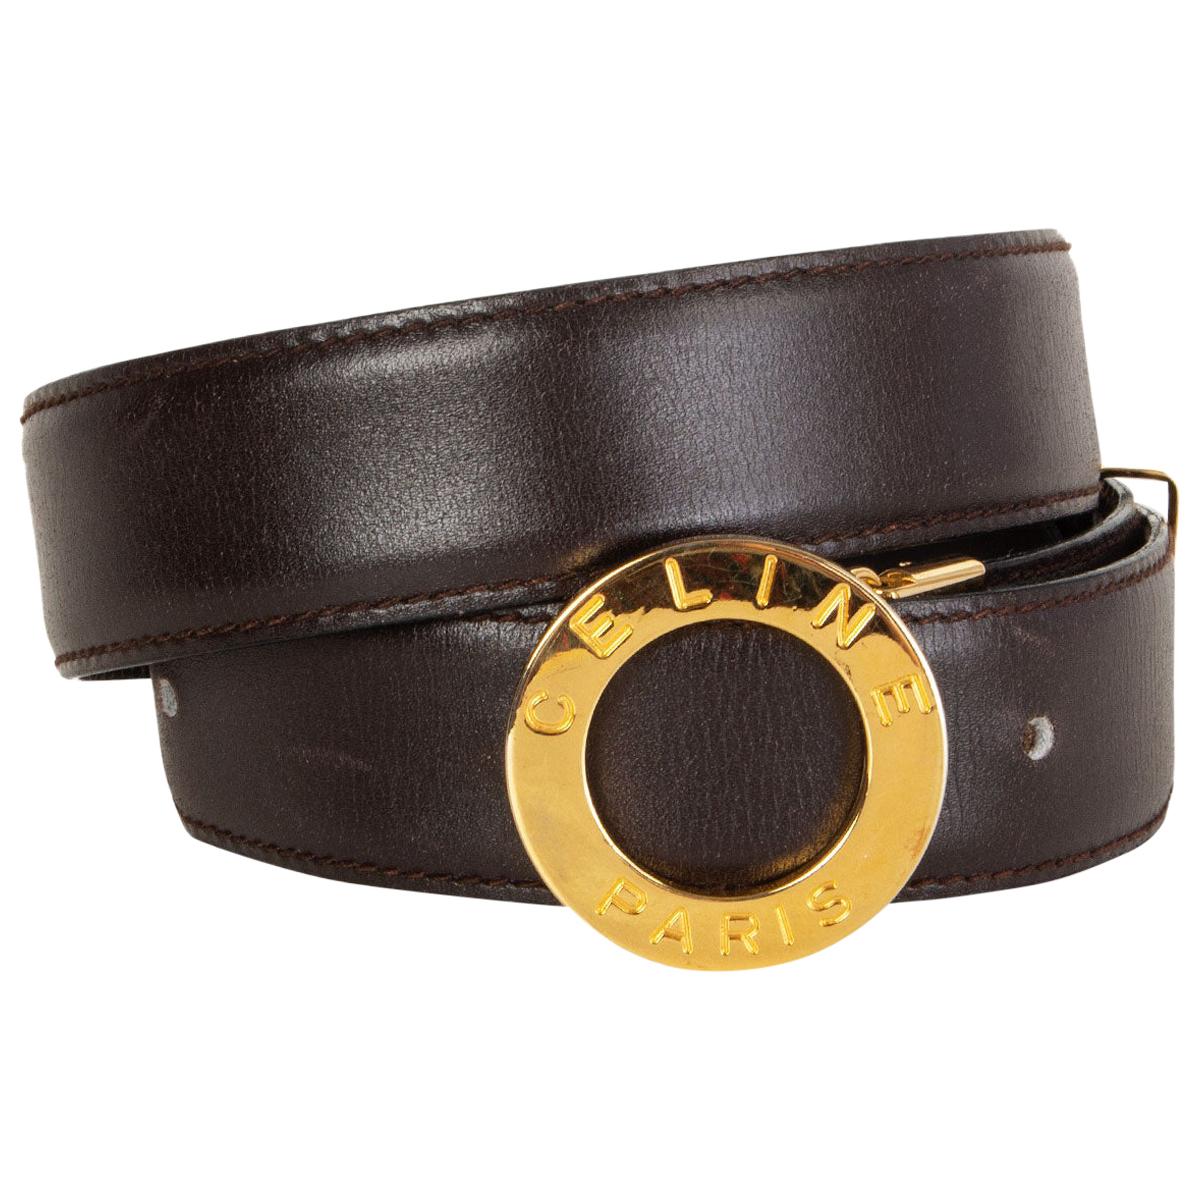 CELINE dark brown leather LOGO BUCKLE Belt 70 VINTAGE